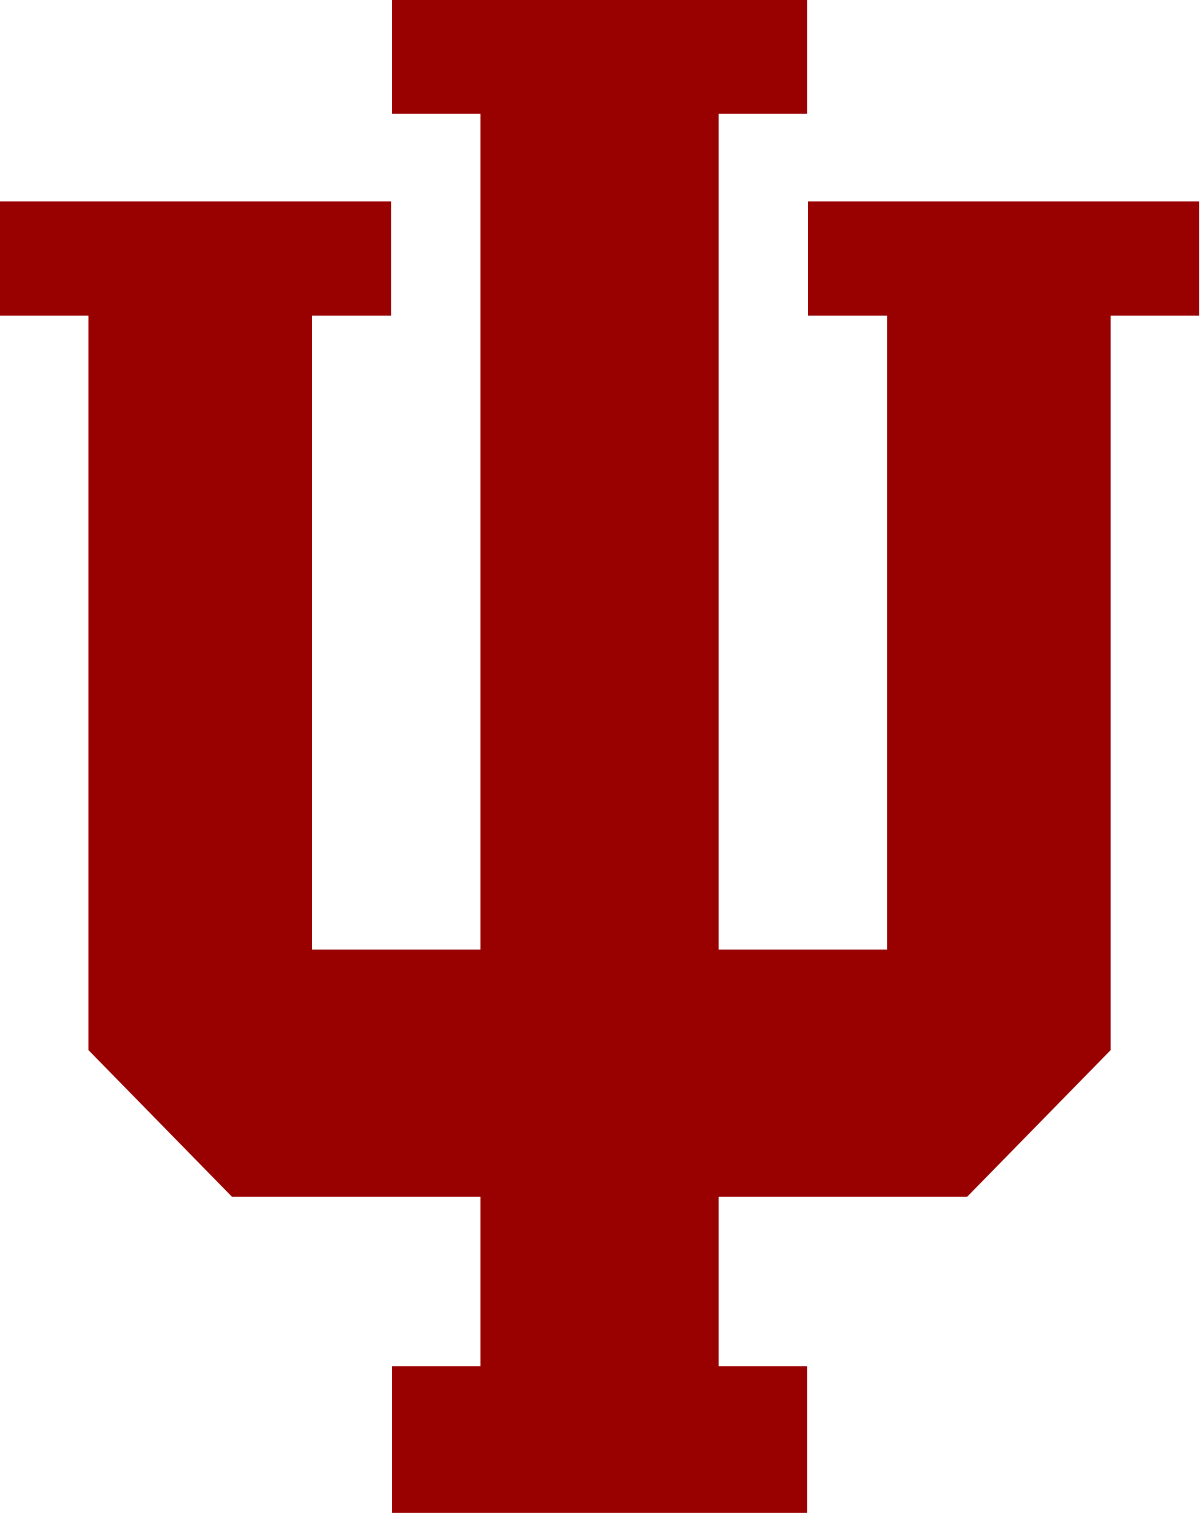 Indiana University Basketball Logo - Indiana Hoosiers